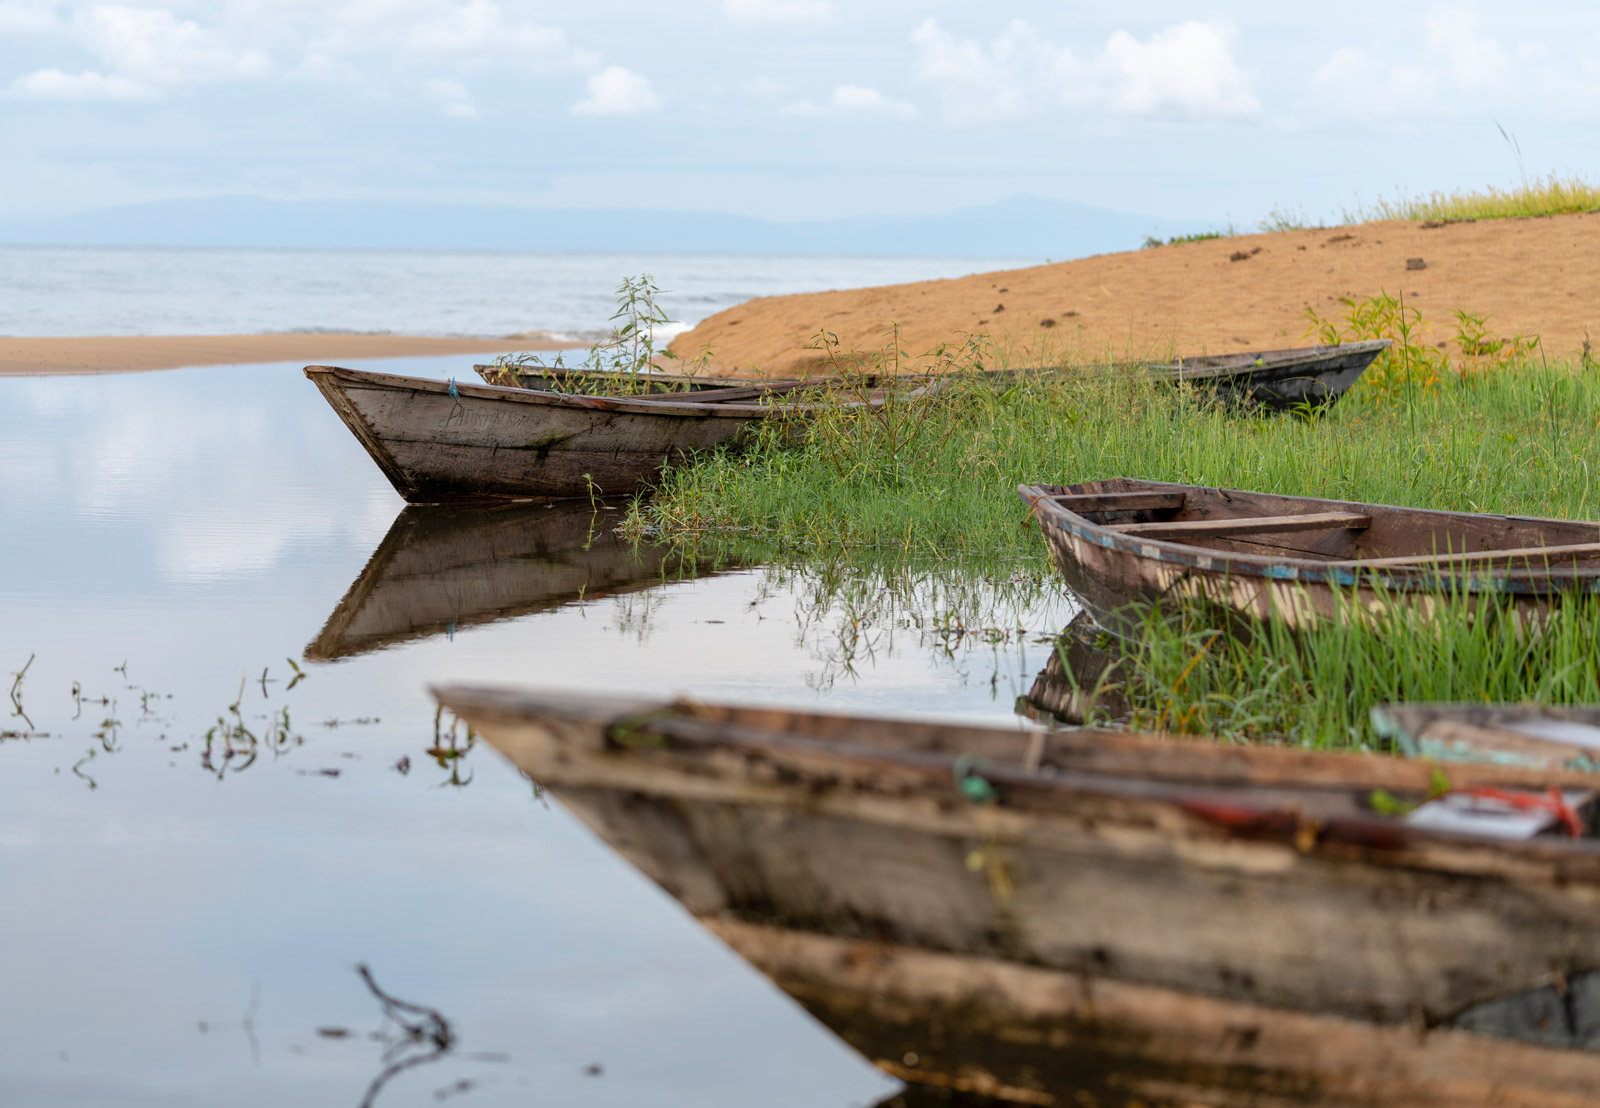 Boats along the shore of Lake Malawi